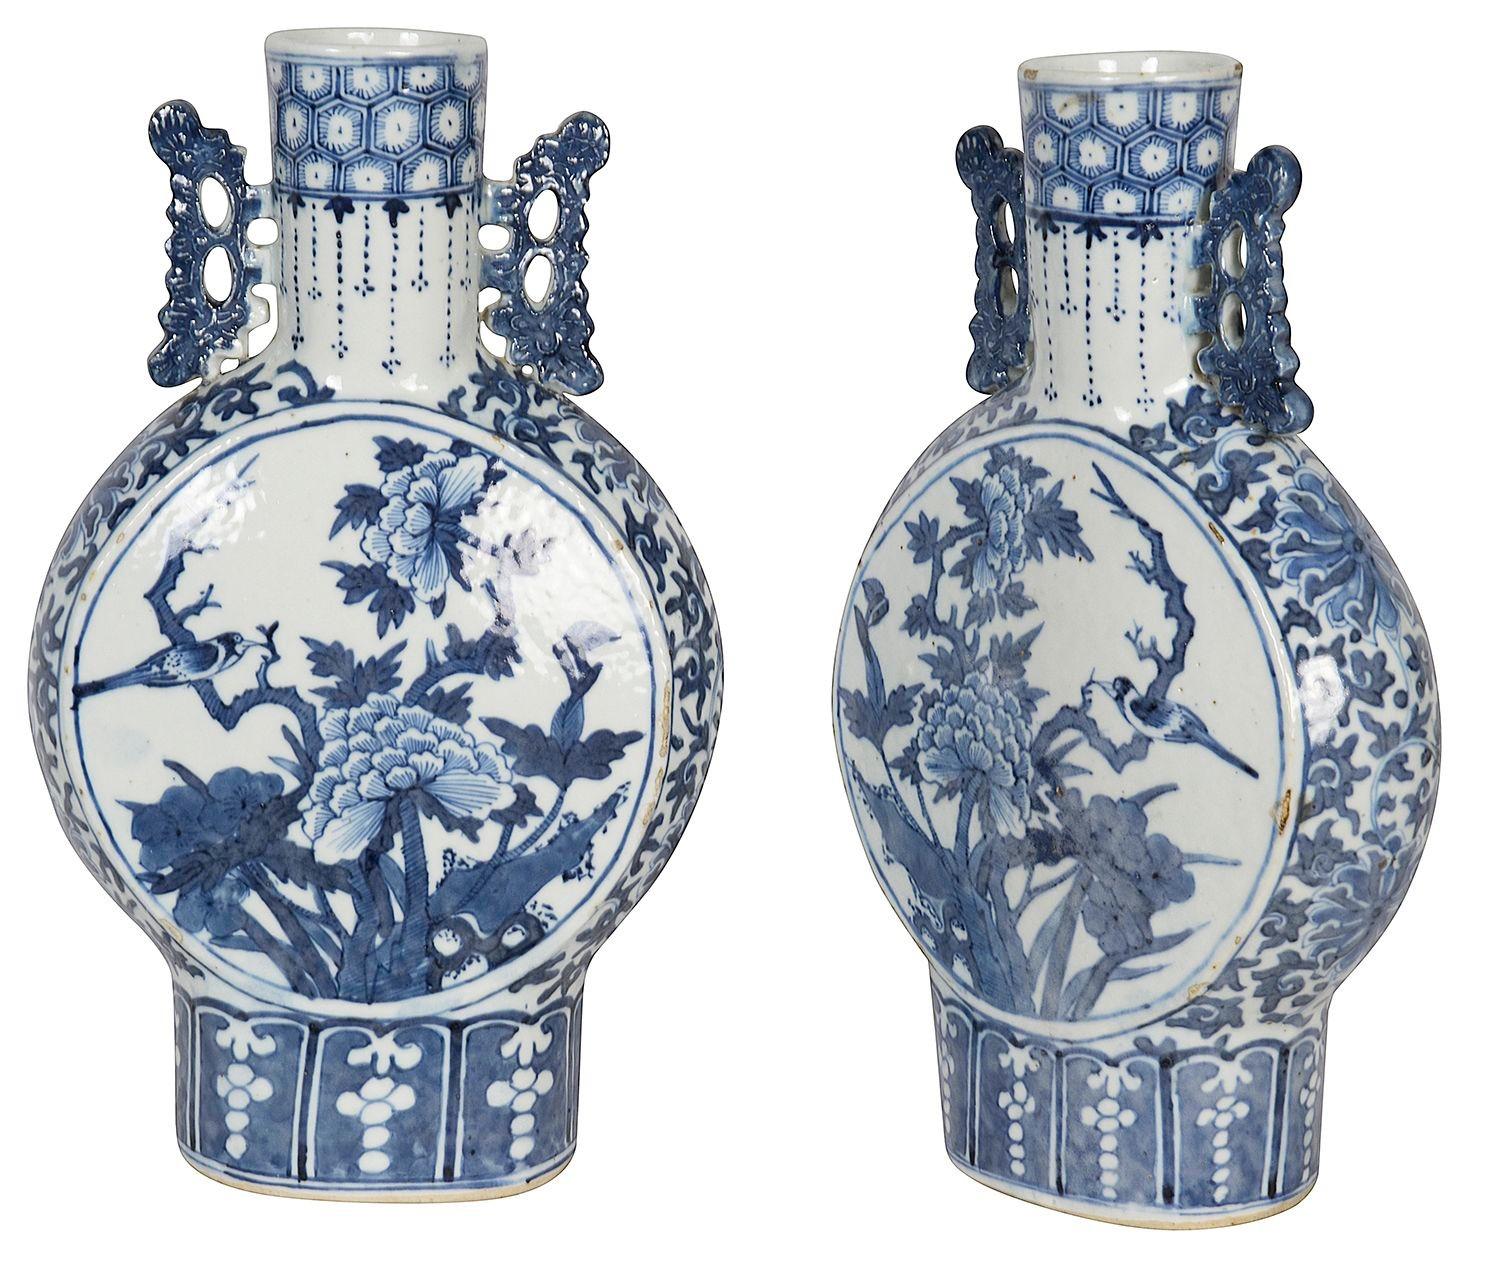 Paar chinesische blau-weiße Mondflaschen aus dem 19. Jahrhundert, jeweils mit klassischen Motiven auf den Halsbändern, durchbrochenen Henkeln auf beiden Seiten und handgemalten runden Tafeln, die exotische Blumenszenen mit einem auf einem Branch